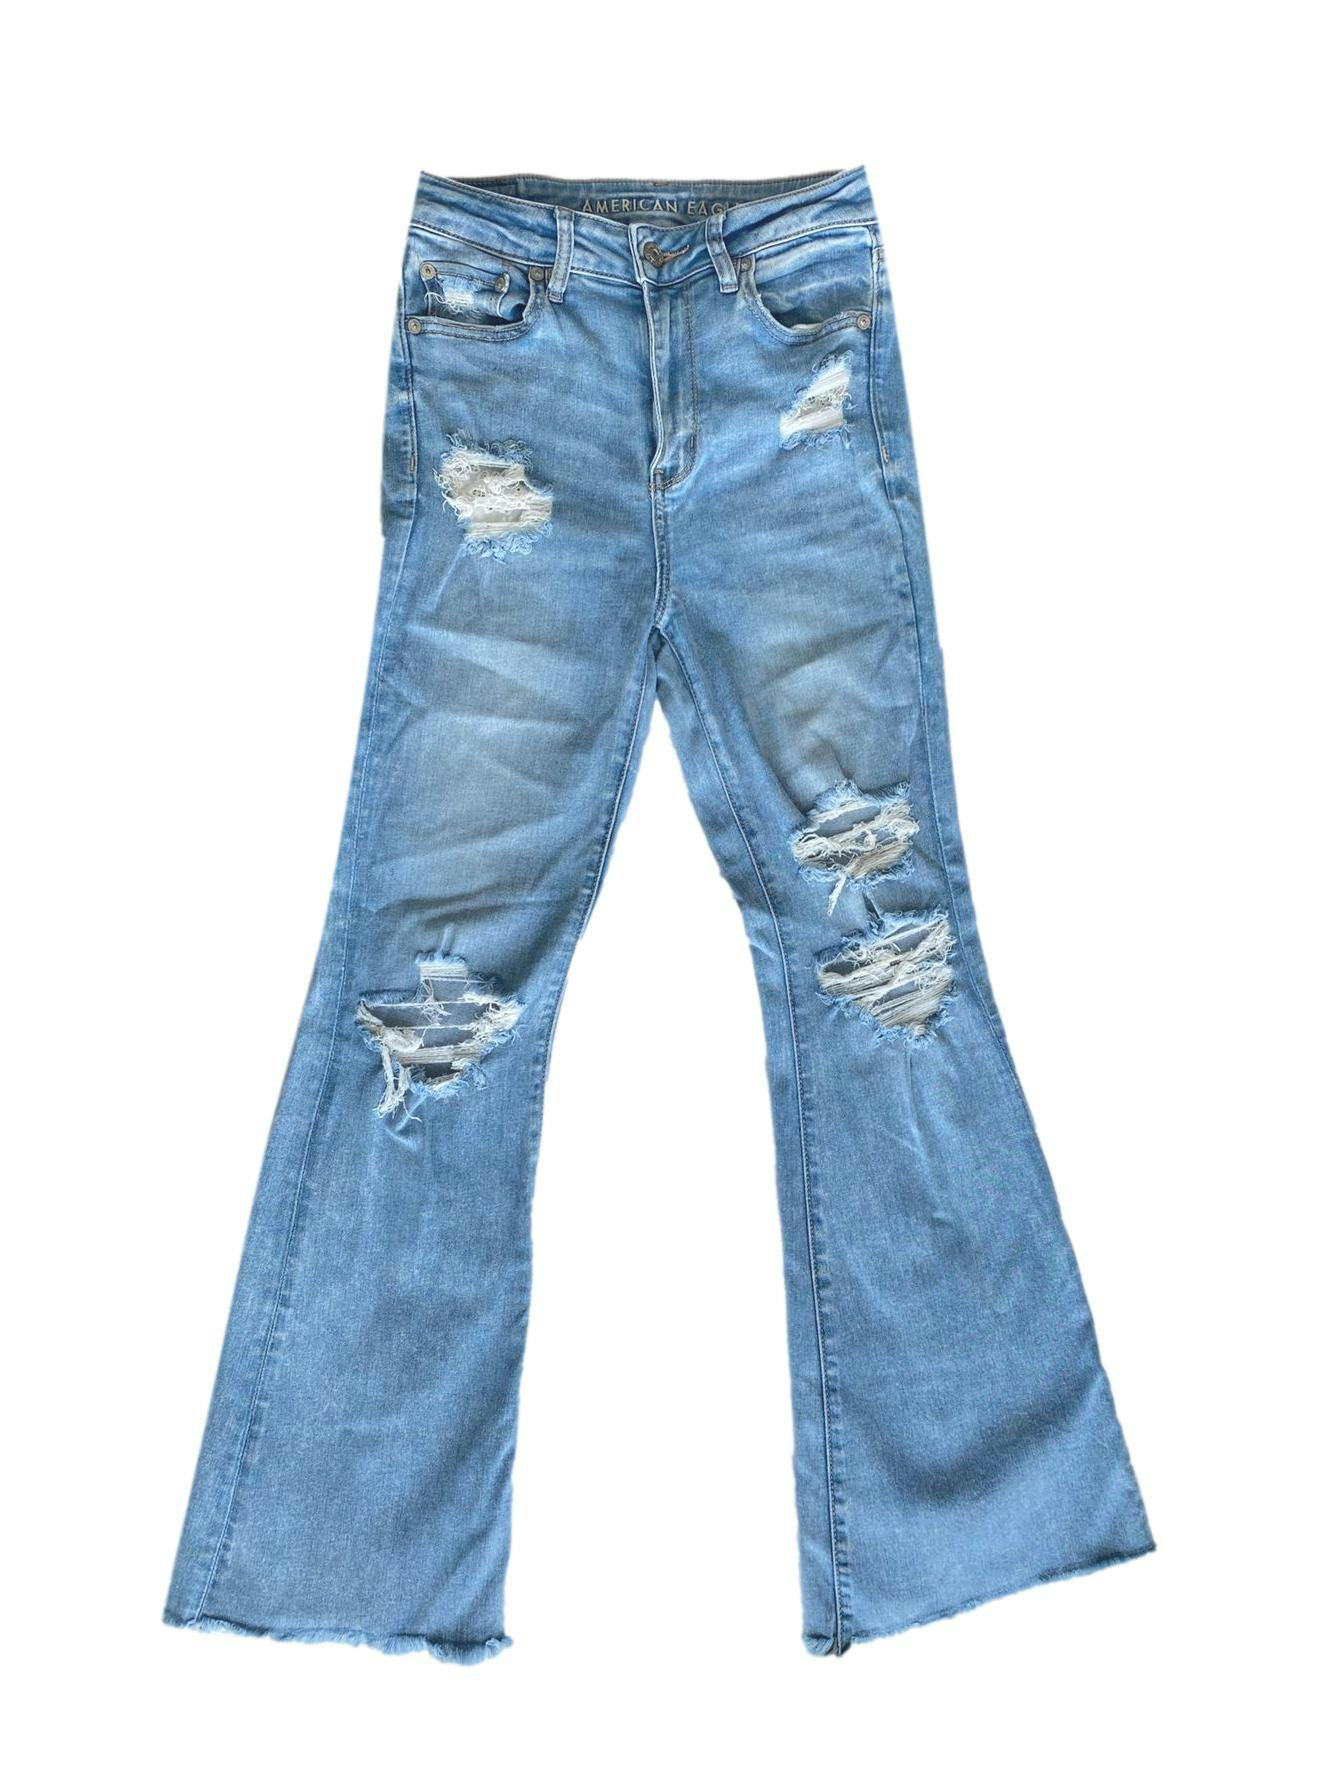 Pantalón jean American Eagle rasgado estilo flared. Cintura: 66cm, largo: 100cm. Precio original 250 soles 